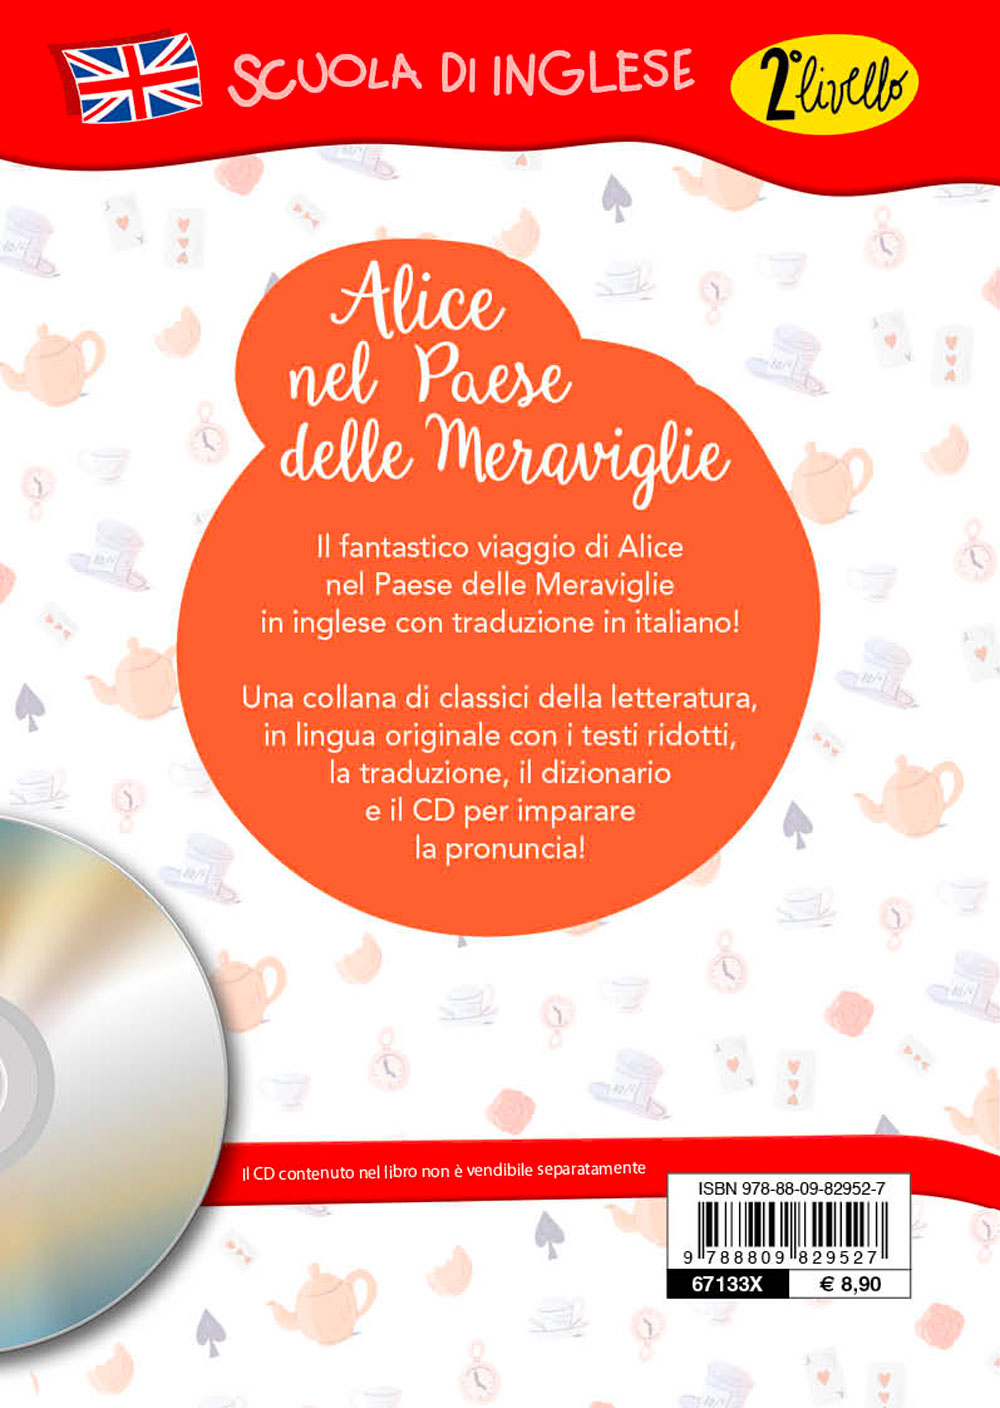 Alice in Wonderland + CD. Con traduzione e dizionario